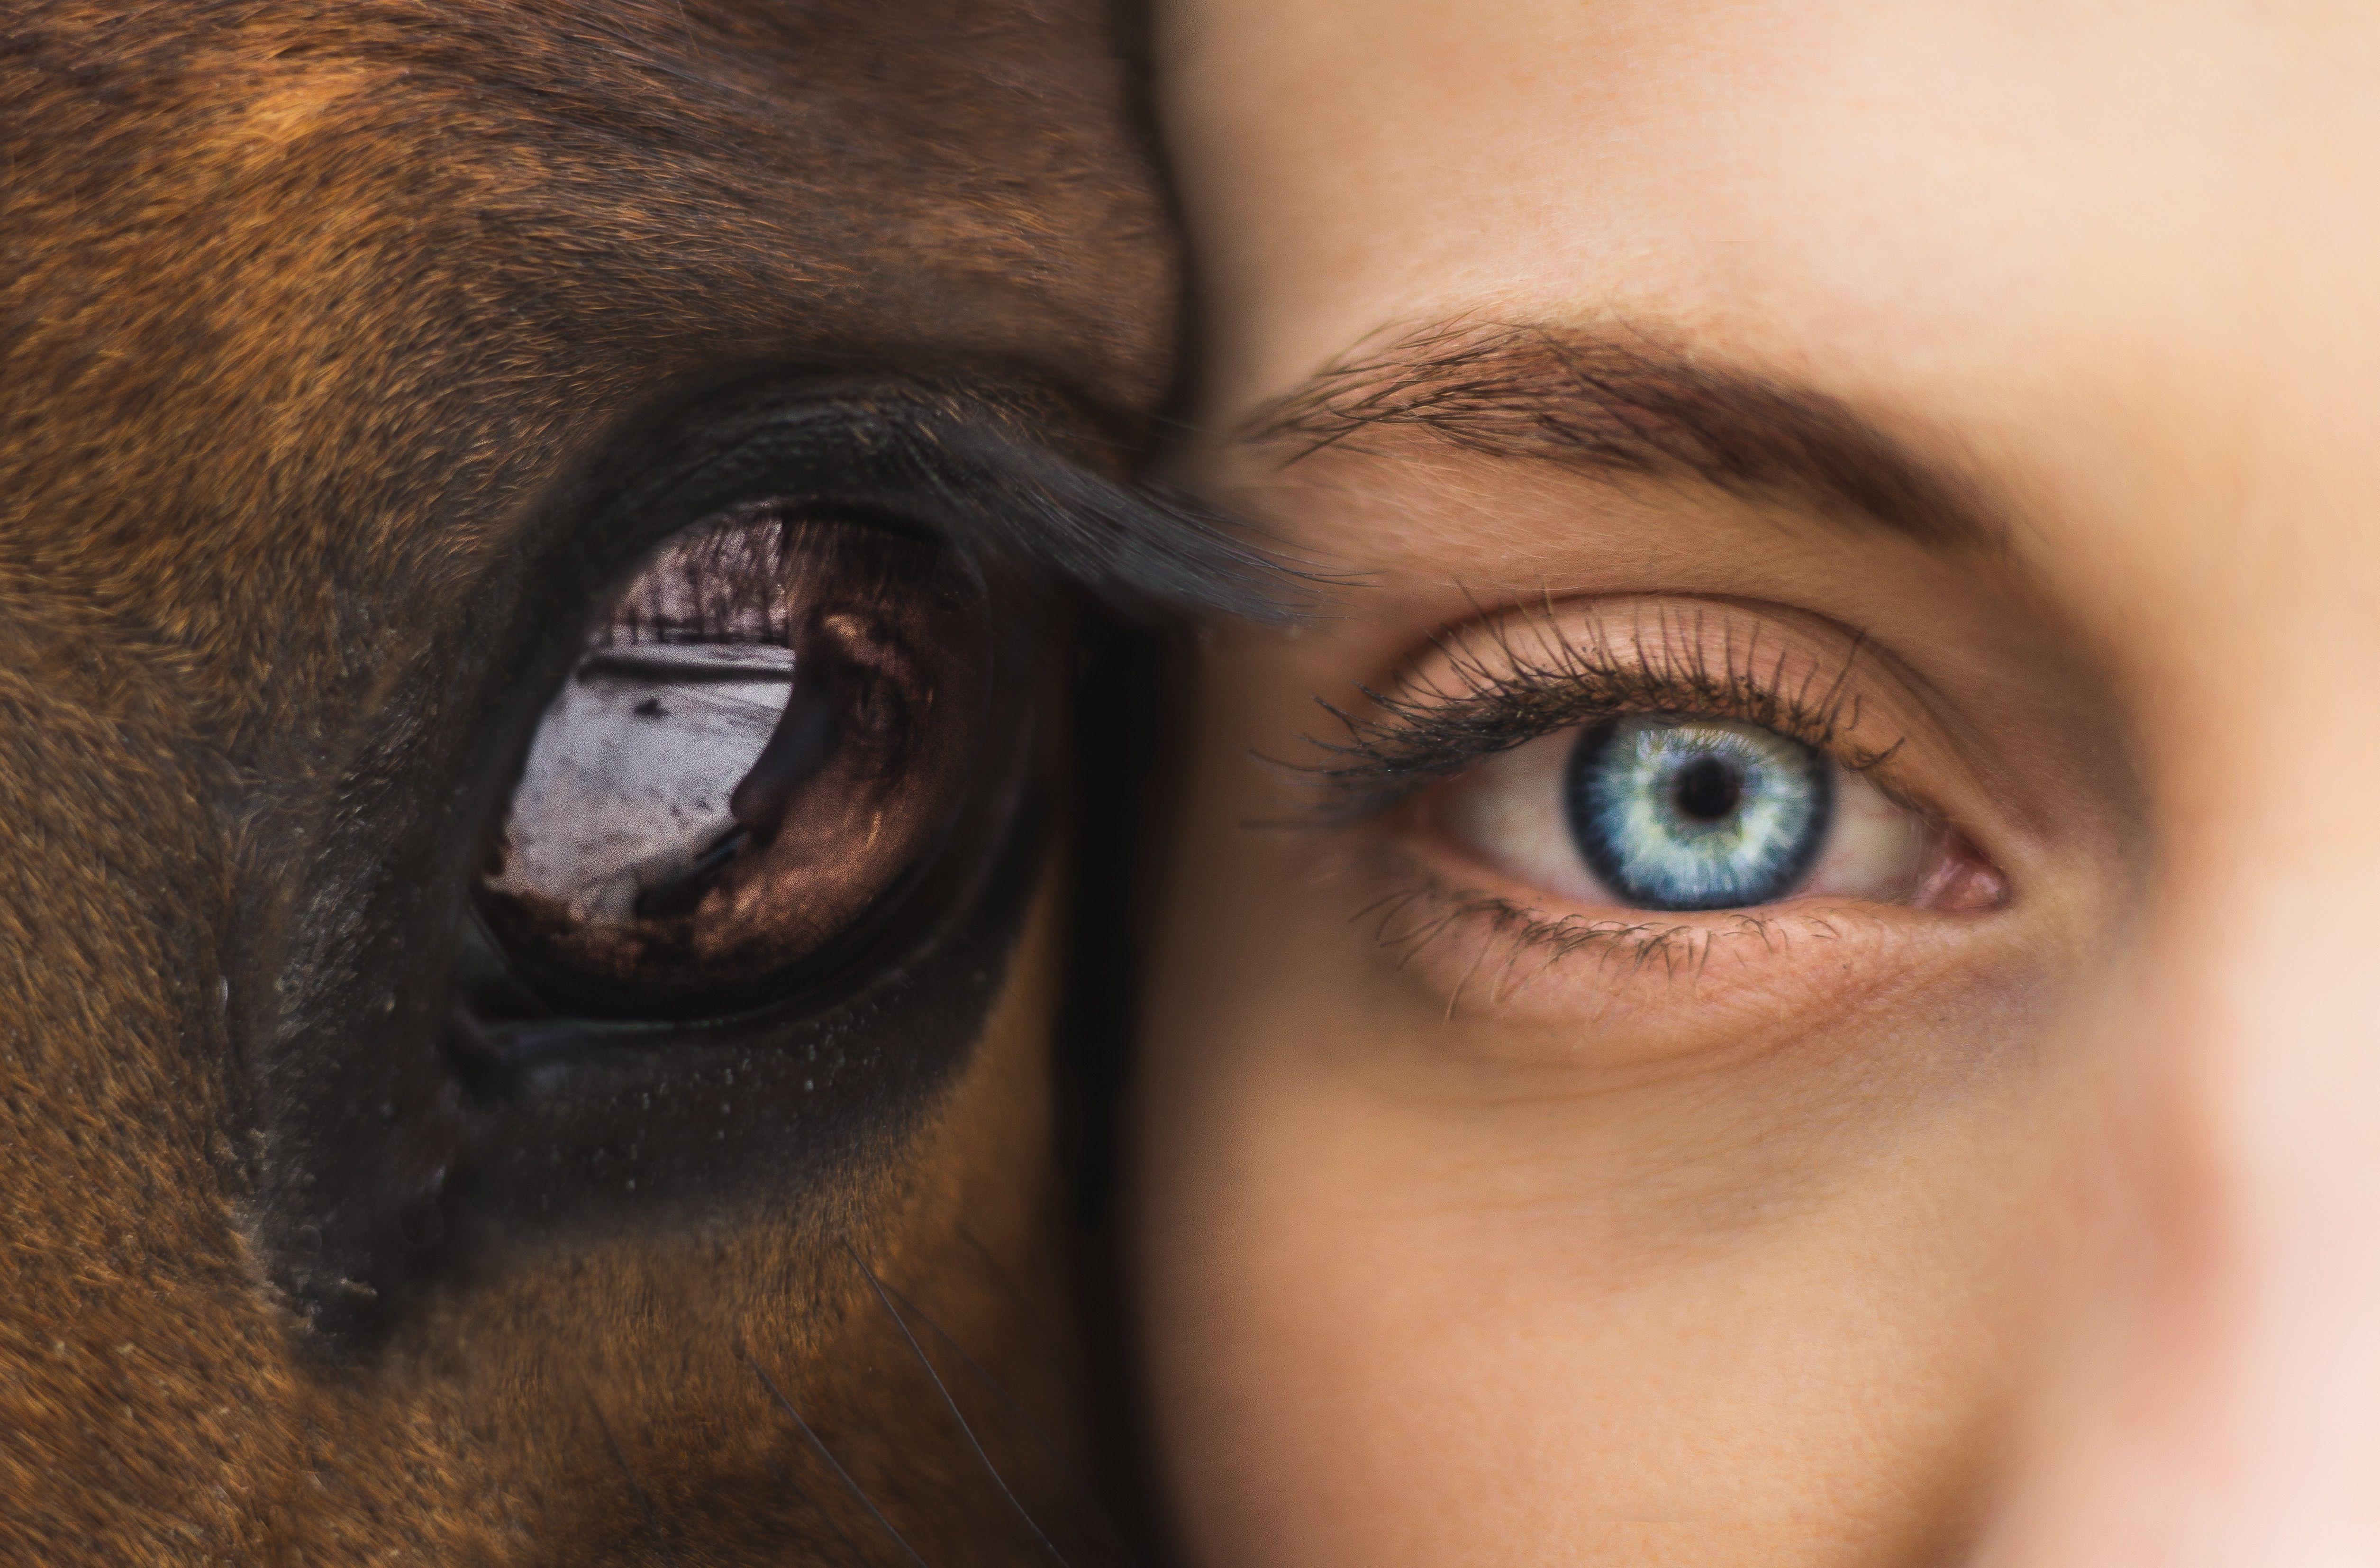 دانلود عکس چشم انسان با مژه های کیوت و چشم حیوان با کیفیت HD 